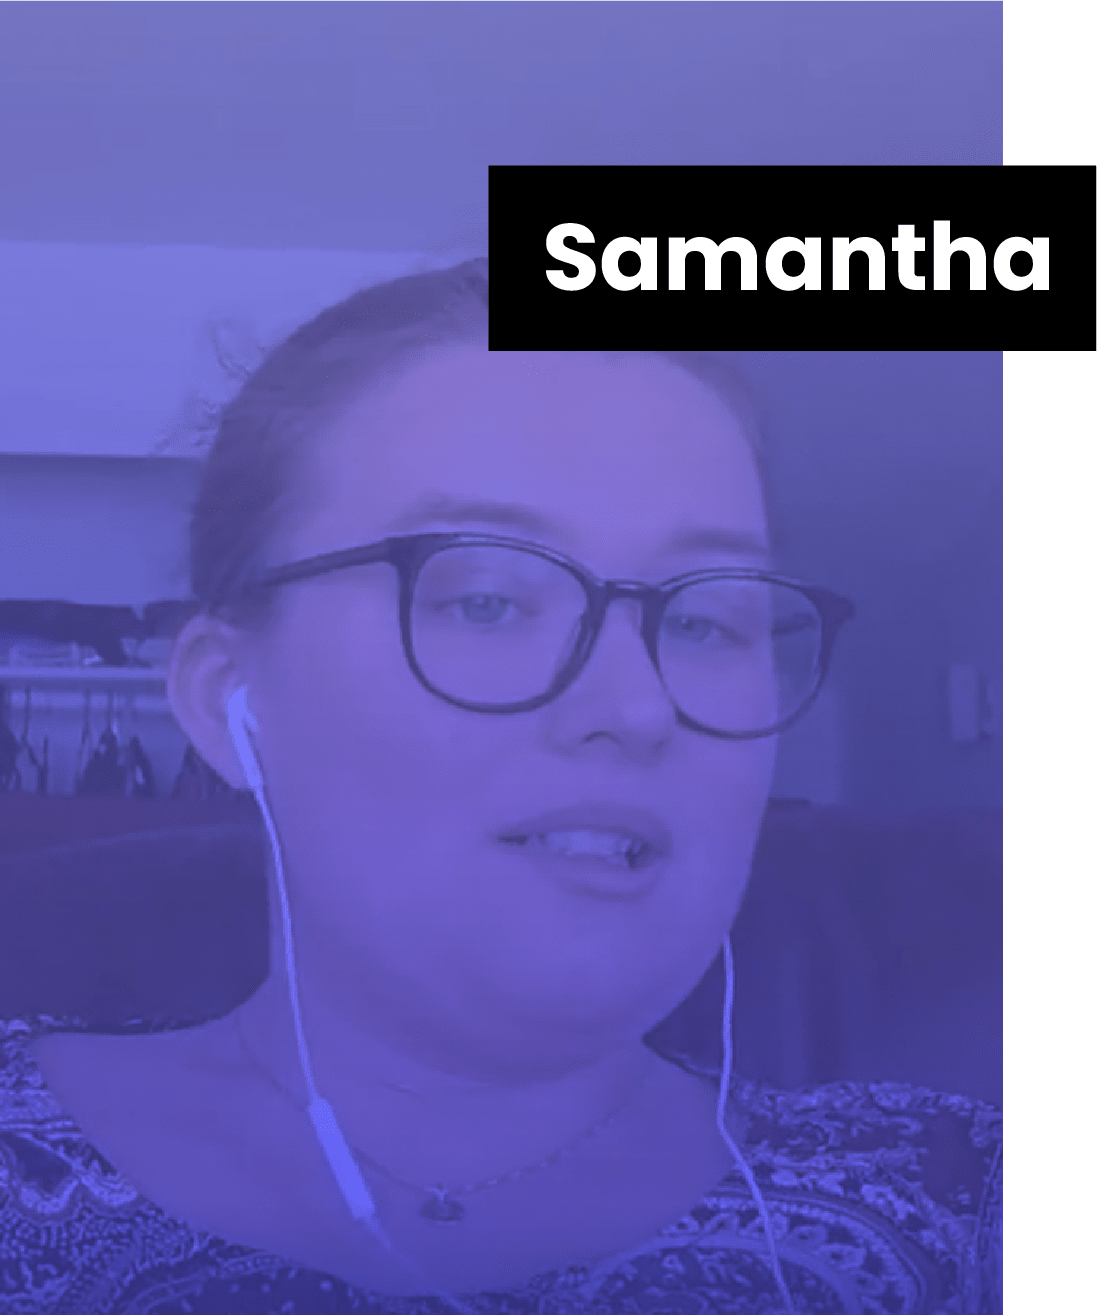 Samantha, the fine-tuner